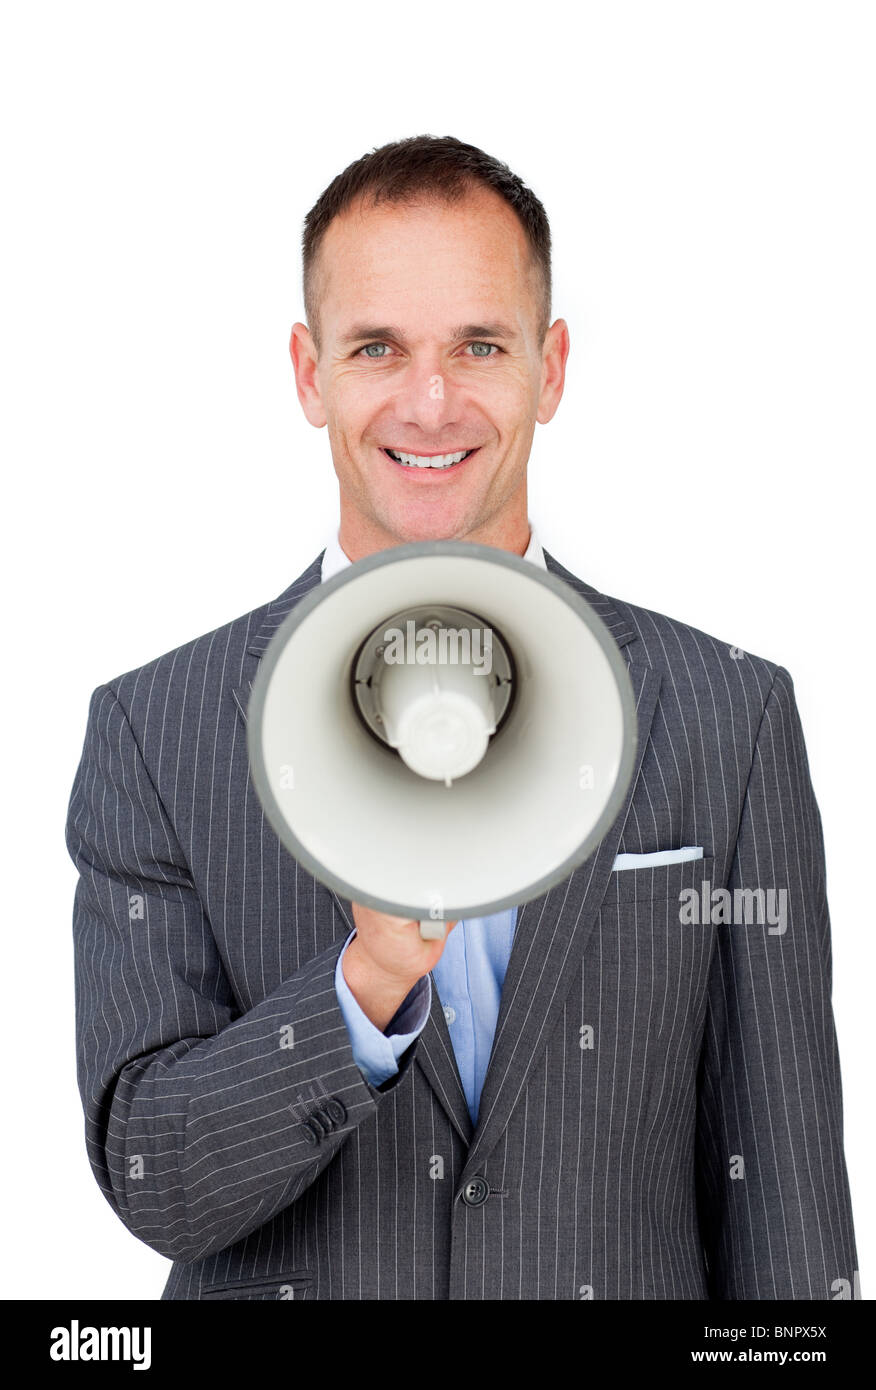 Confident businessman holding a megaphone Banque D'Images